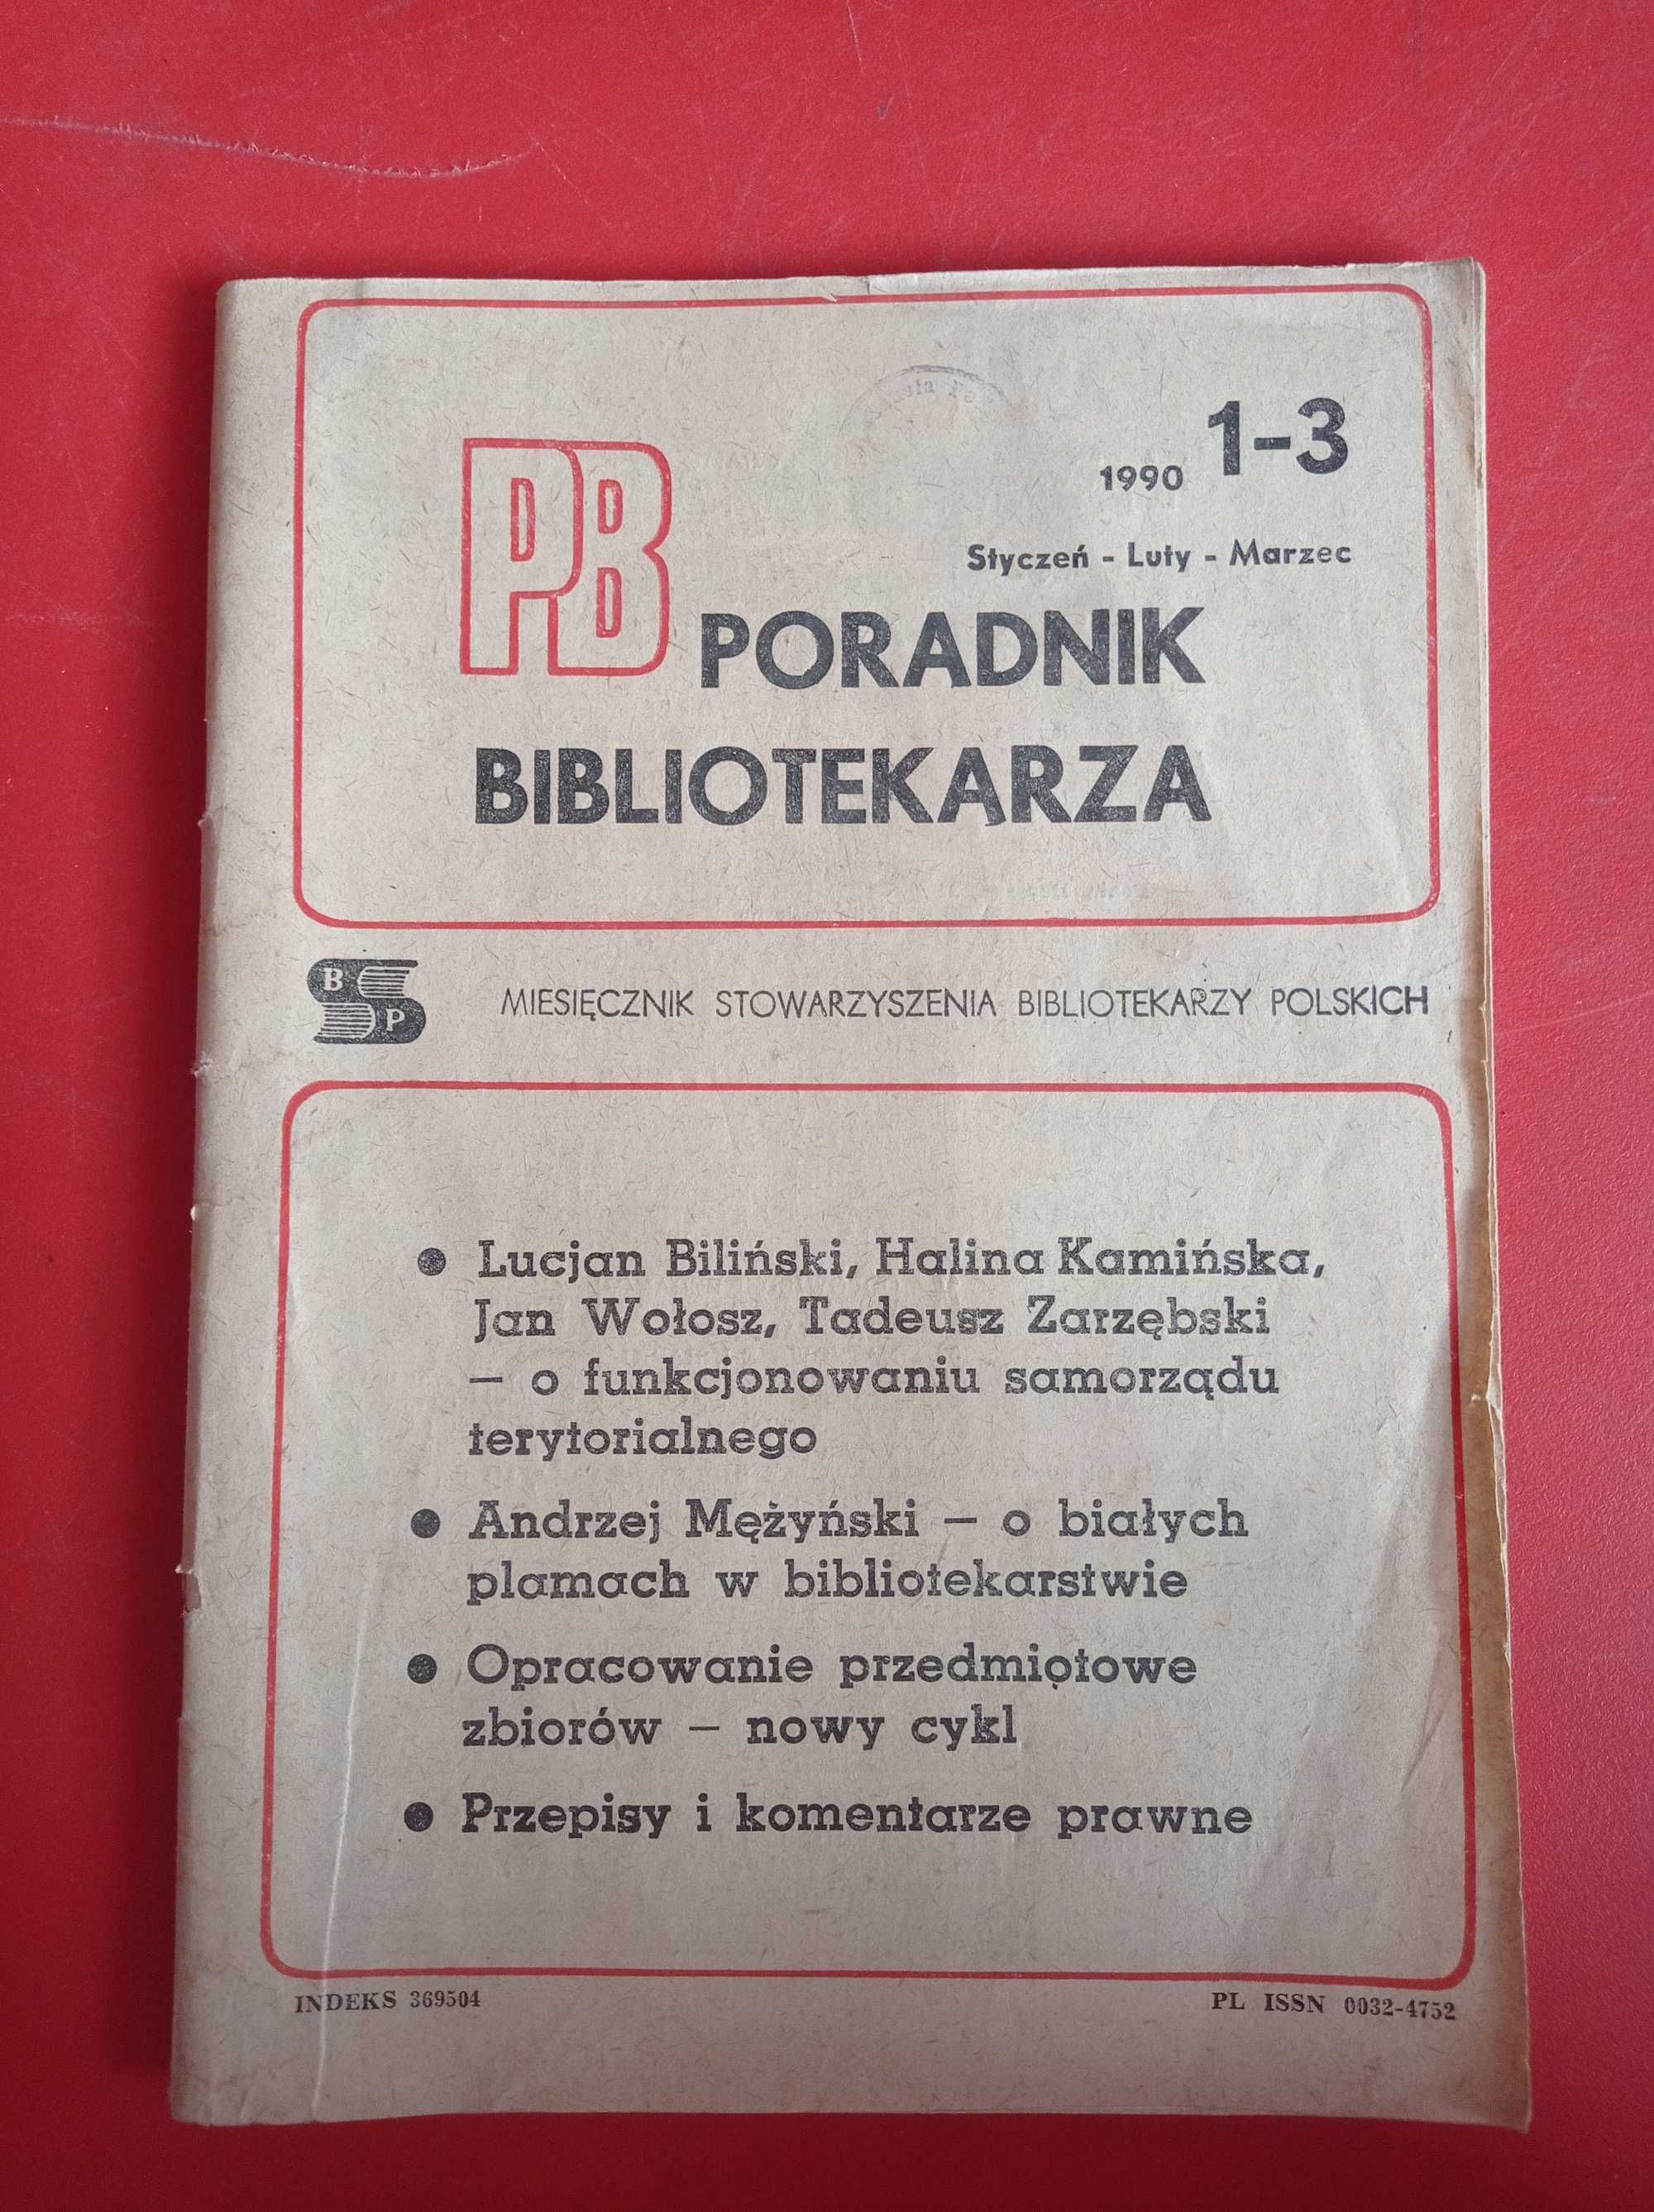 Poradnik Bibliotekarza, nr 1-3/1990, styczeń-luty-marzec 1990